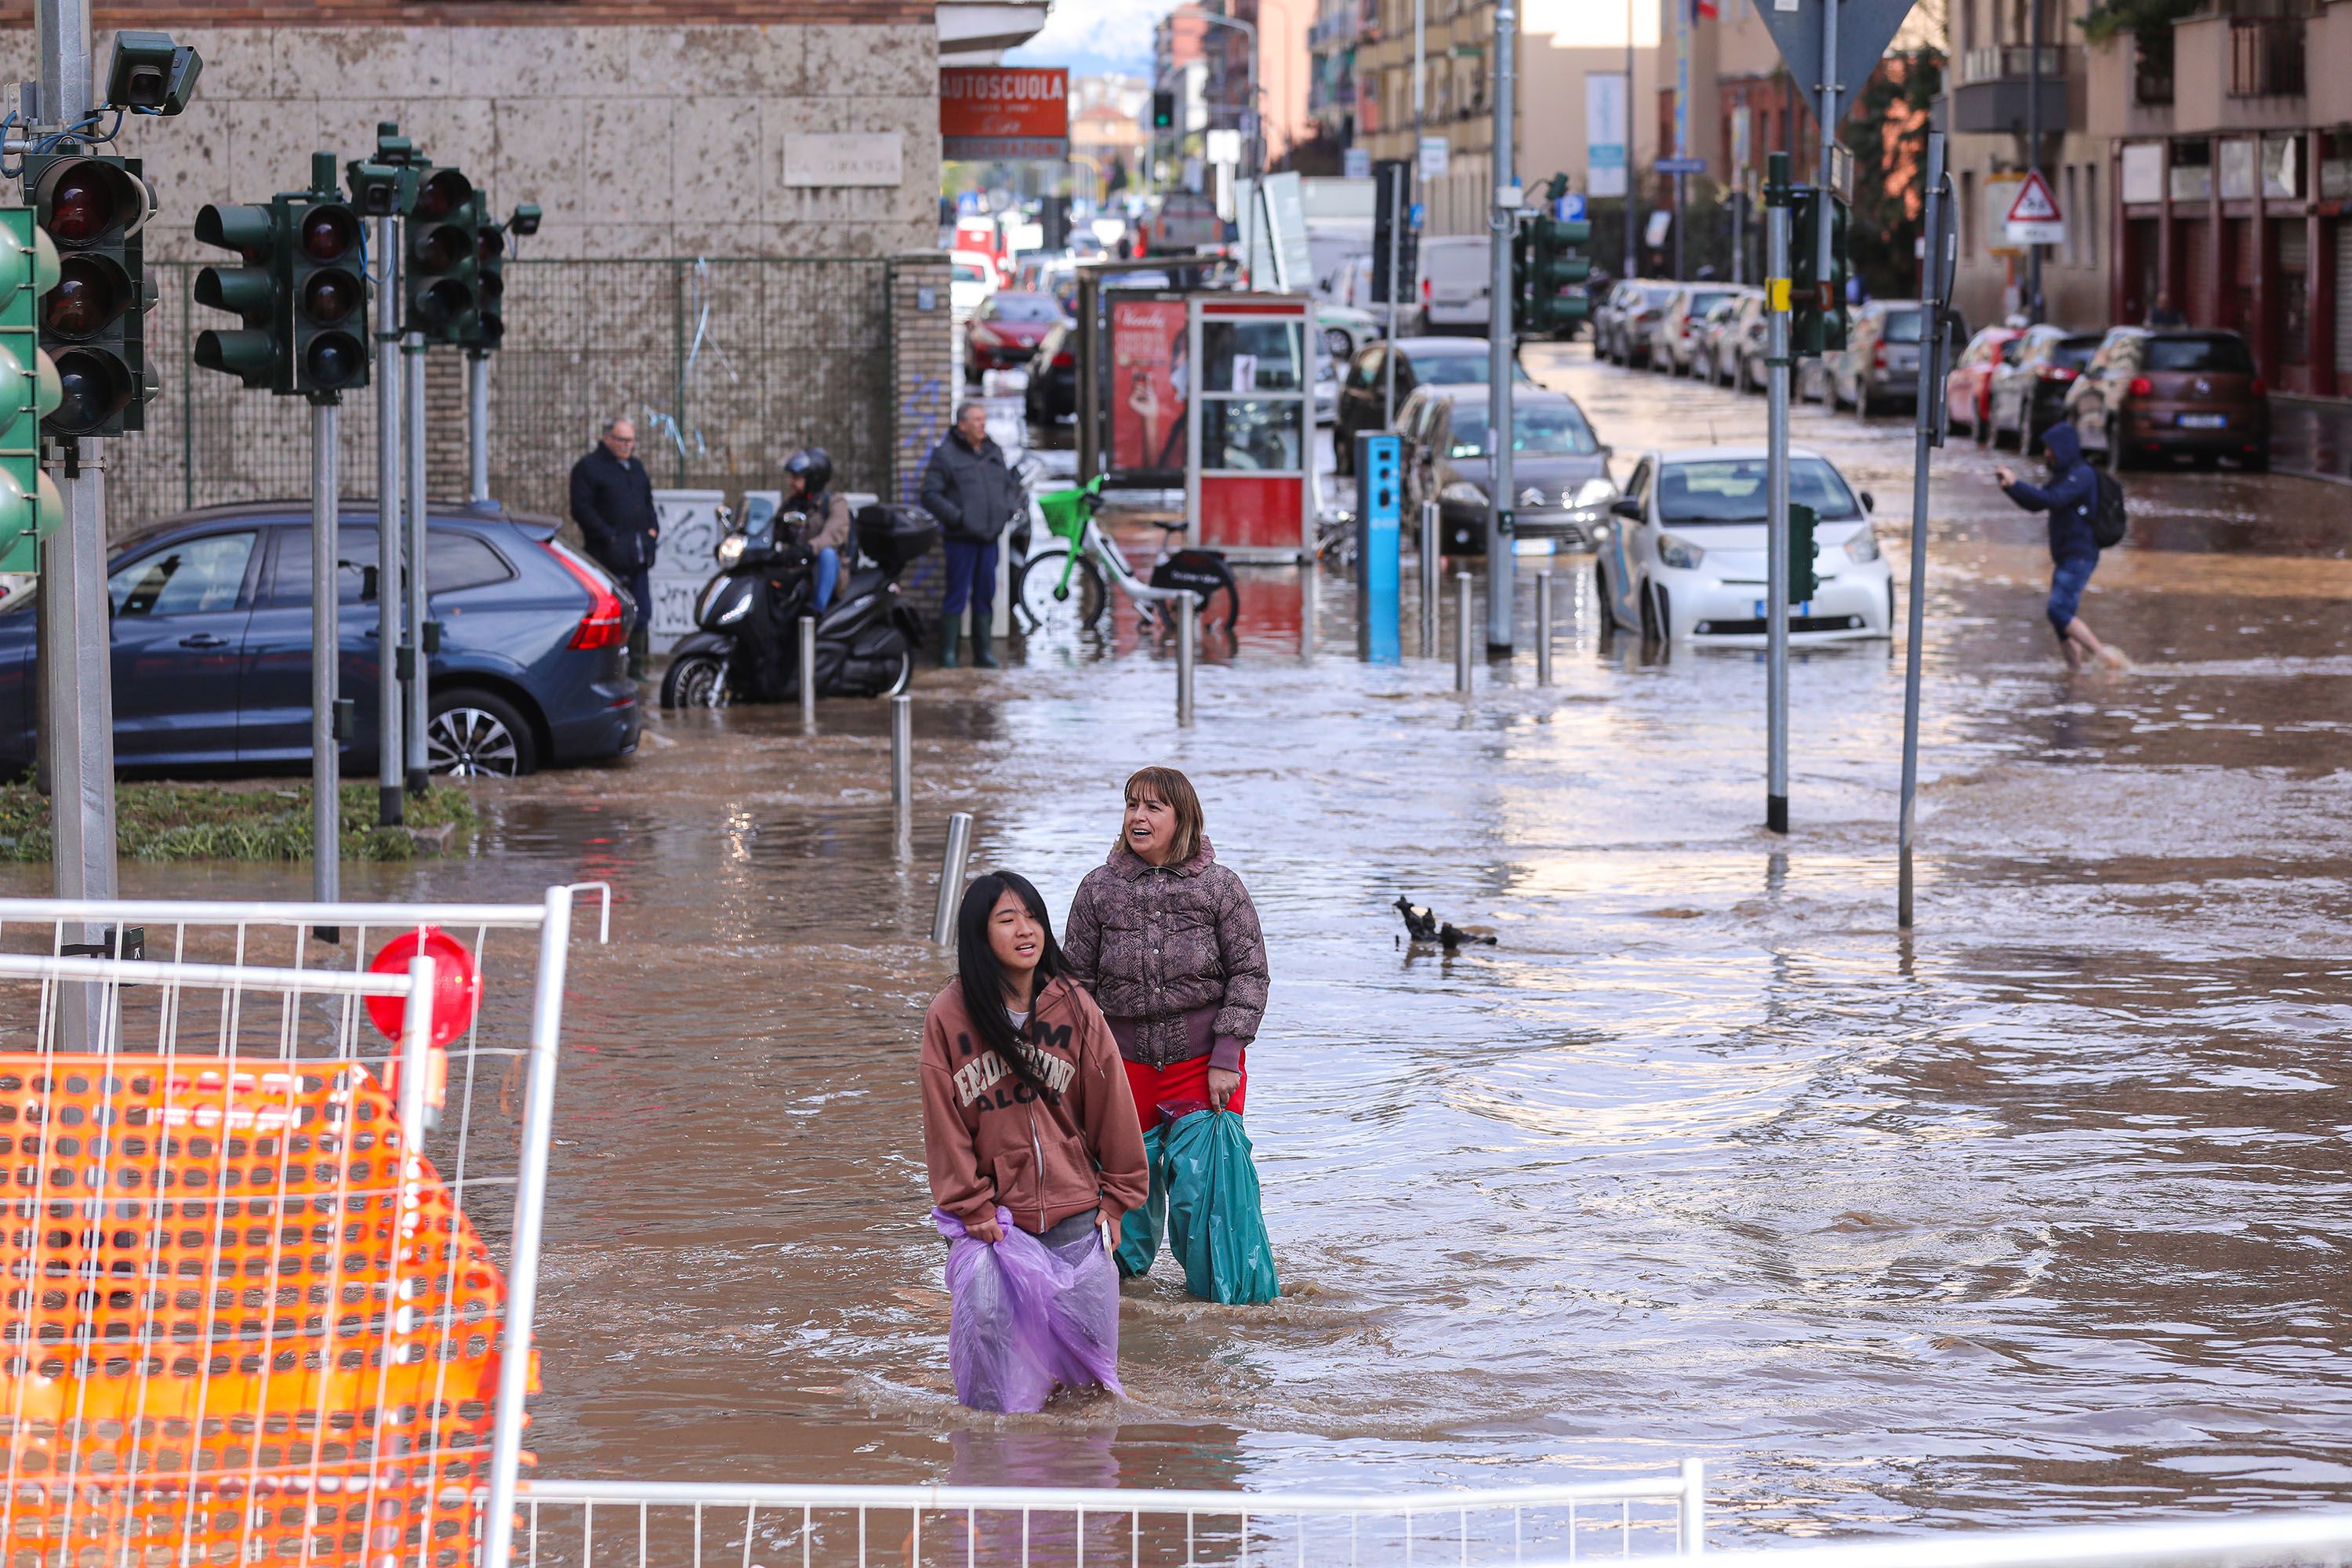 /VIDEO/ Alluvioni in Italia: cinque persone morte per lo straripamento dei fiumi in seguito a piogge torrenziali